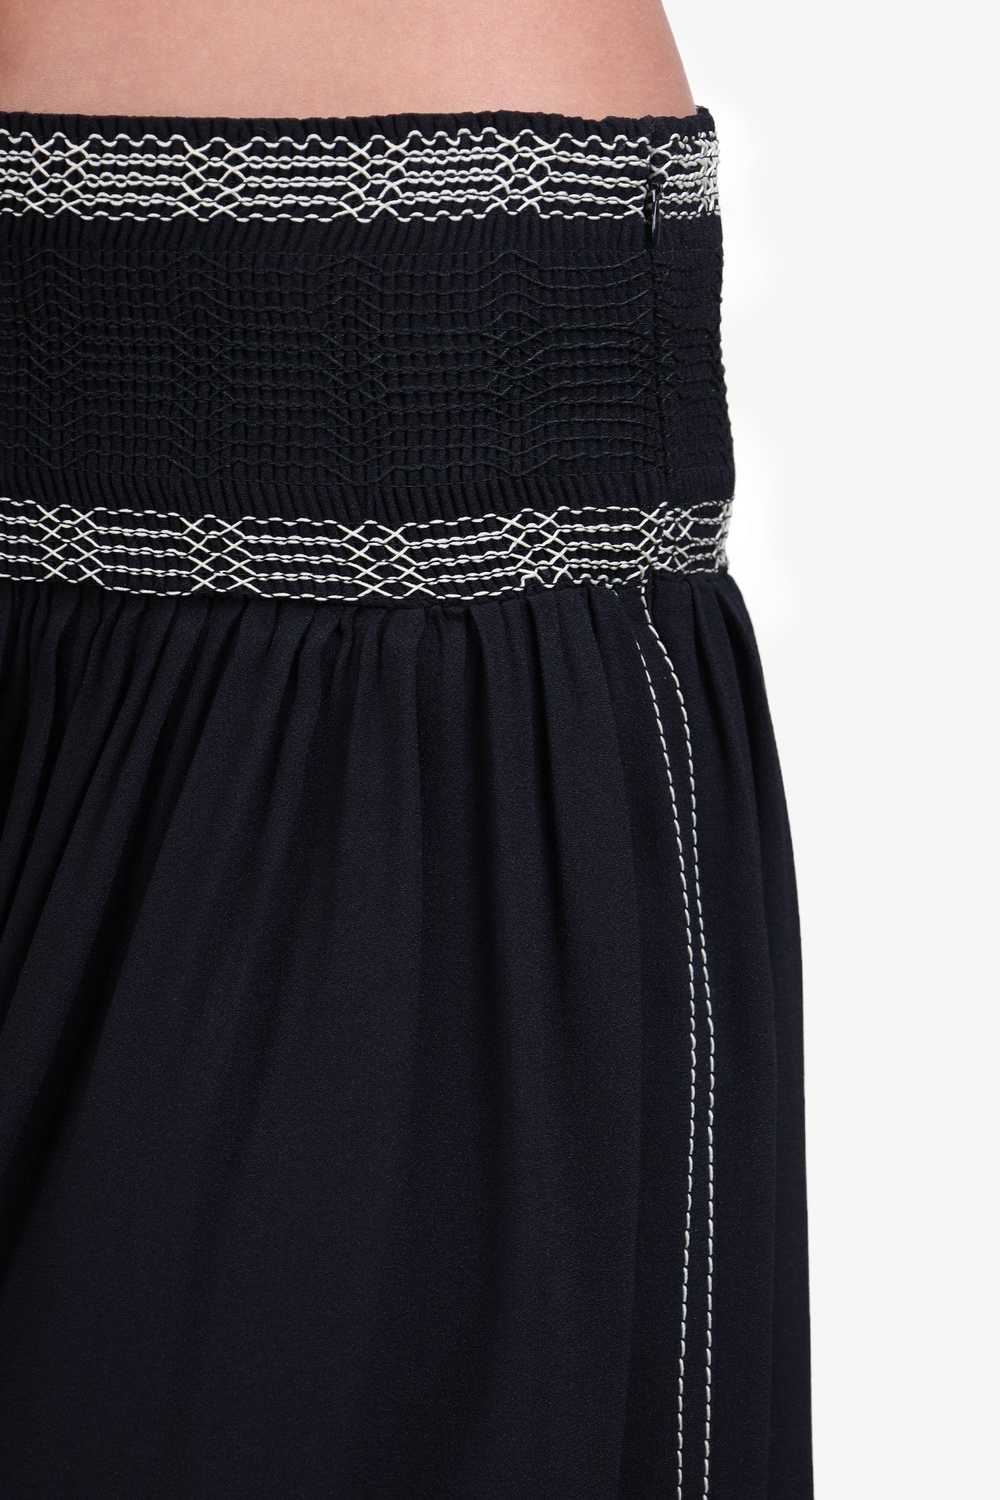 Prada Black Pleated Midi Skirt Size 36 - image 2